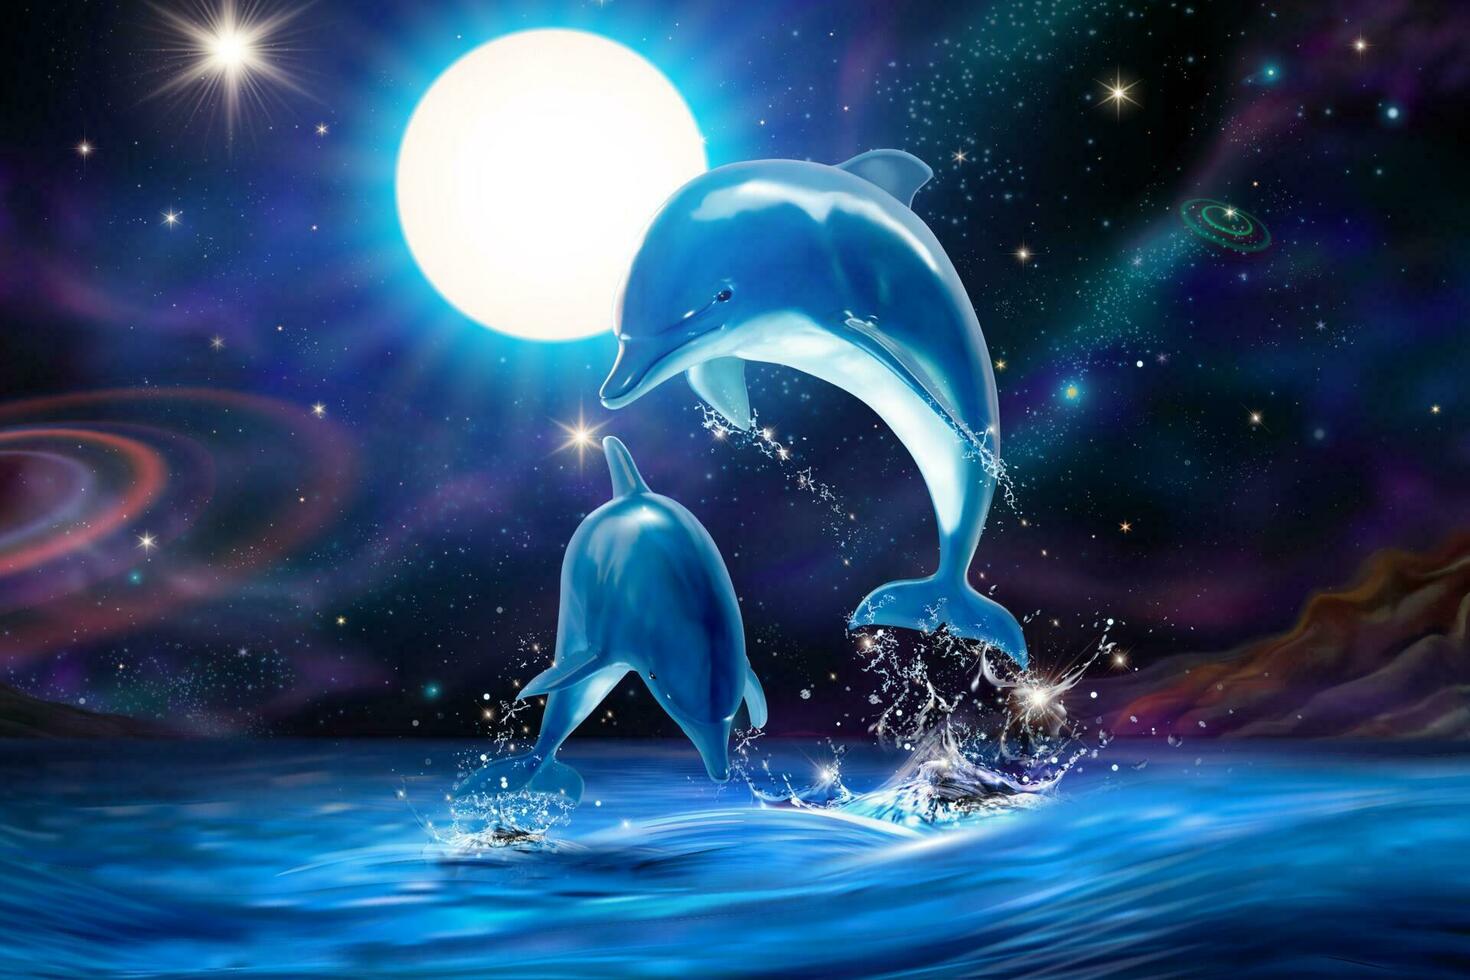 härlig bryter mot flasknos delfiner på attraktiv universum himmel i 3d illustration marin mural vektor